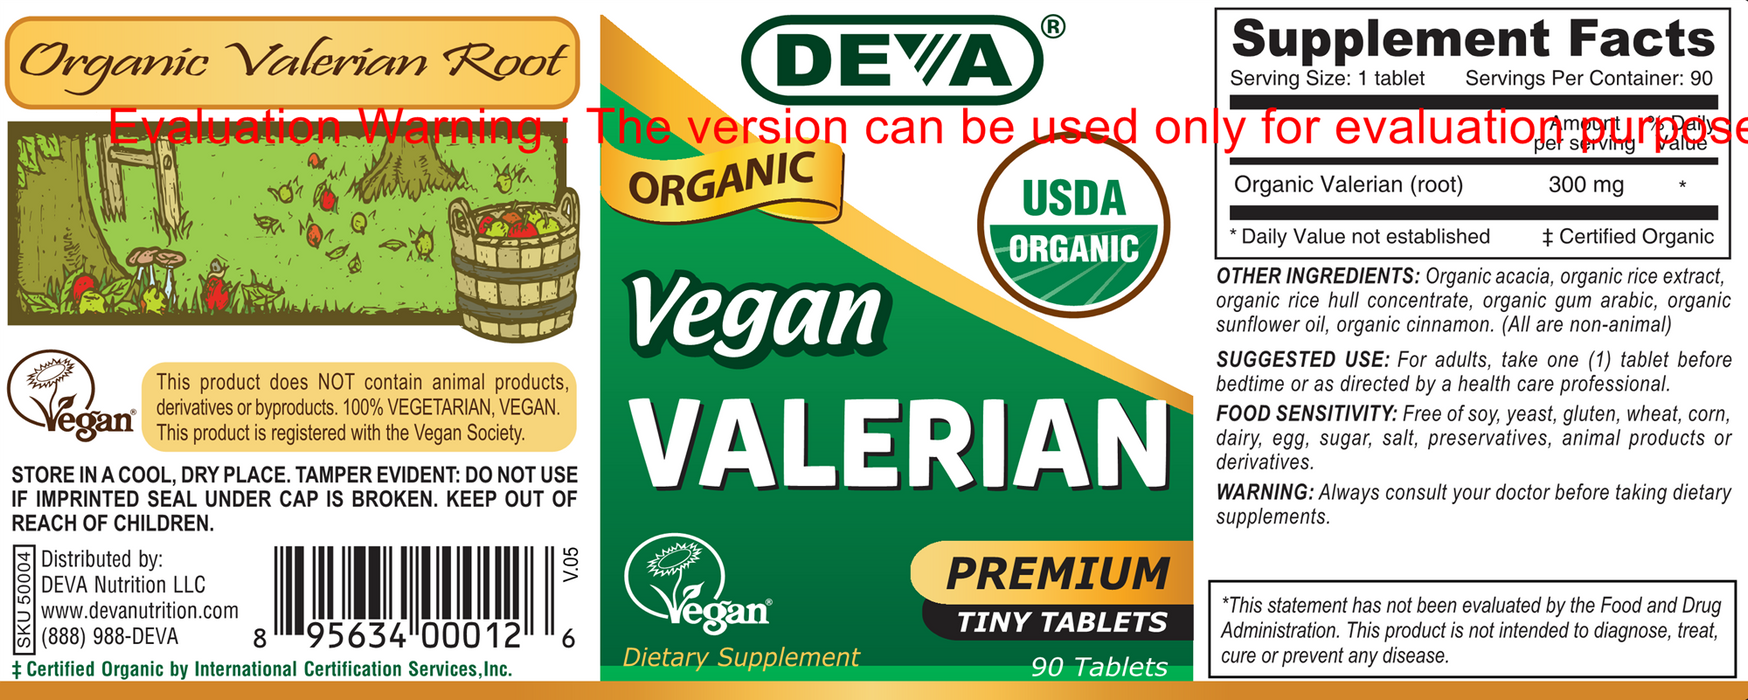 Deva Nutrition LLC Vegan Valerian Organic 90 tabs